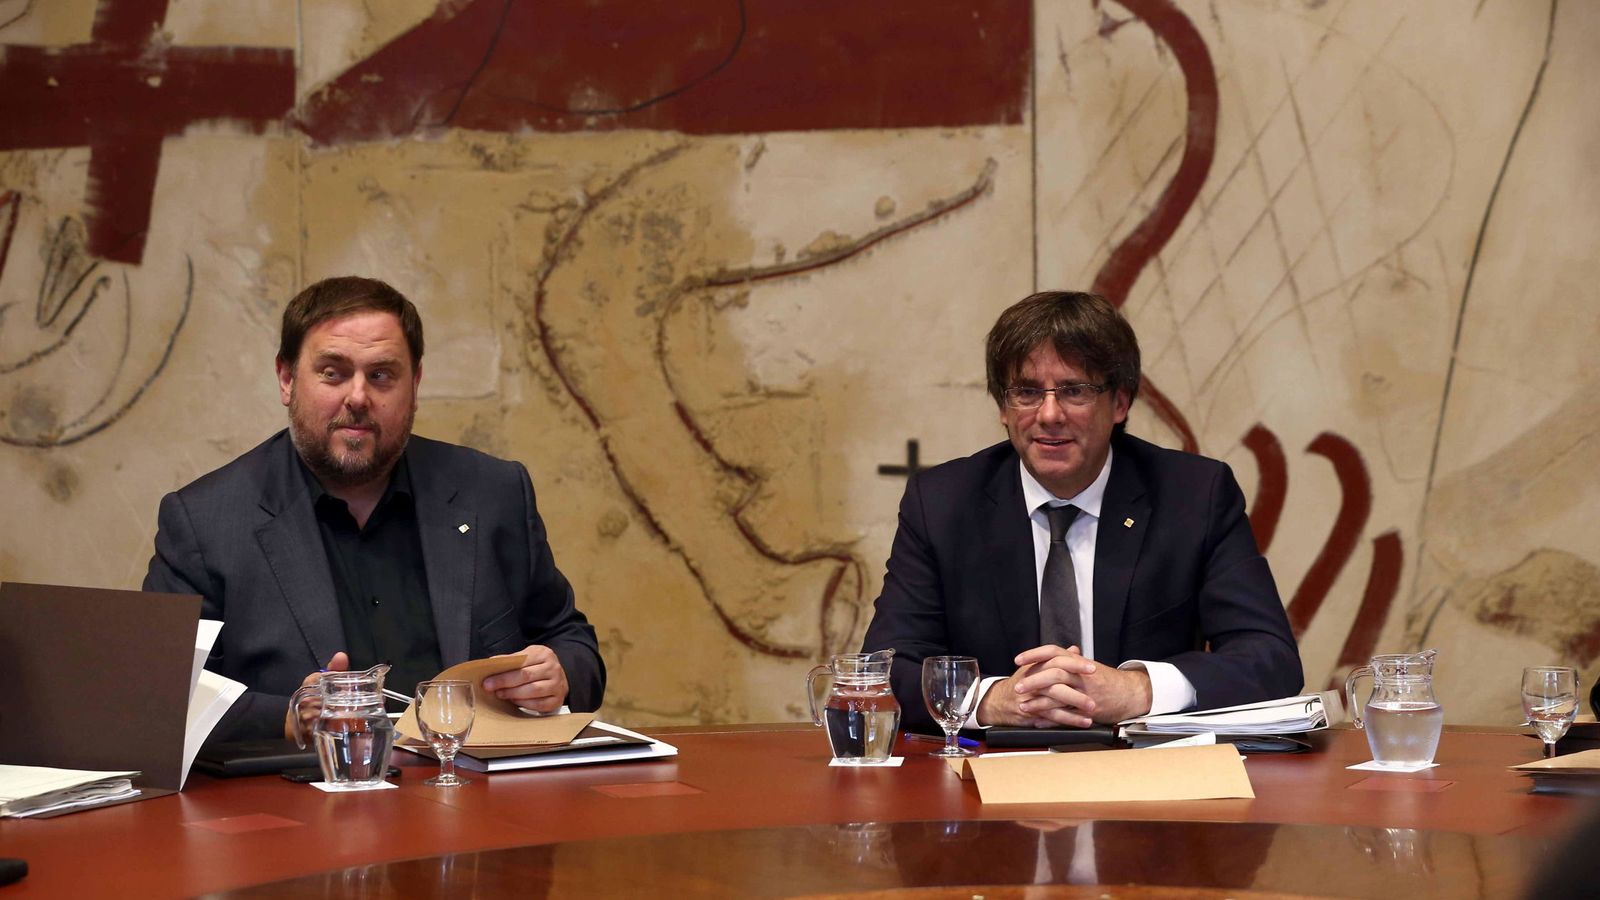 Foto: El presidente de la Generalitat, Carles Puigdemont, y su vicepresidente económico, Oriol Junqueras. (EFE)